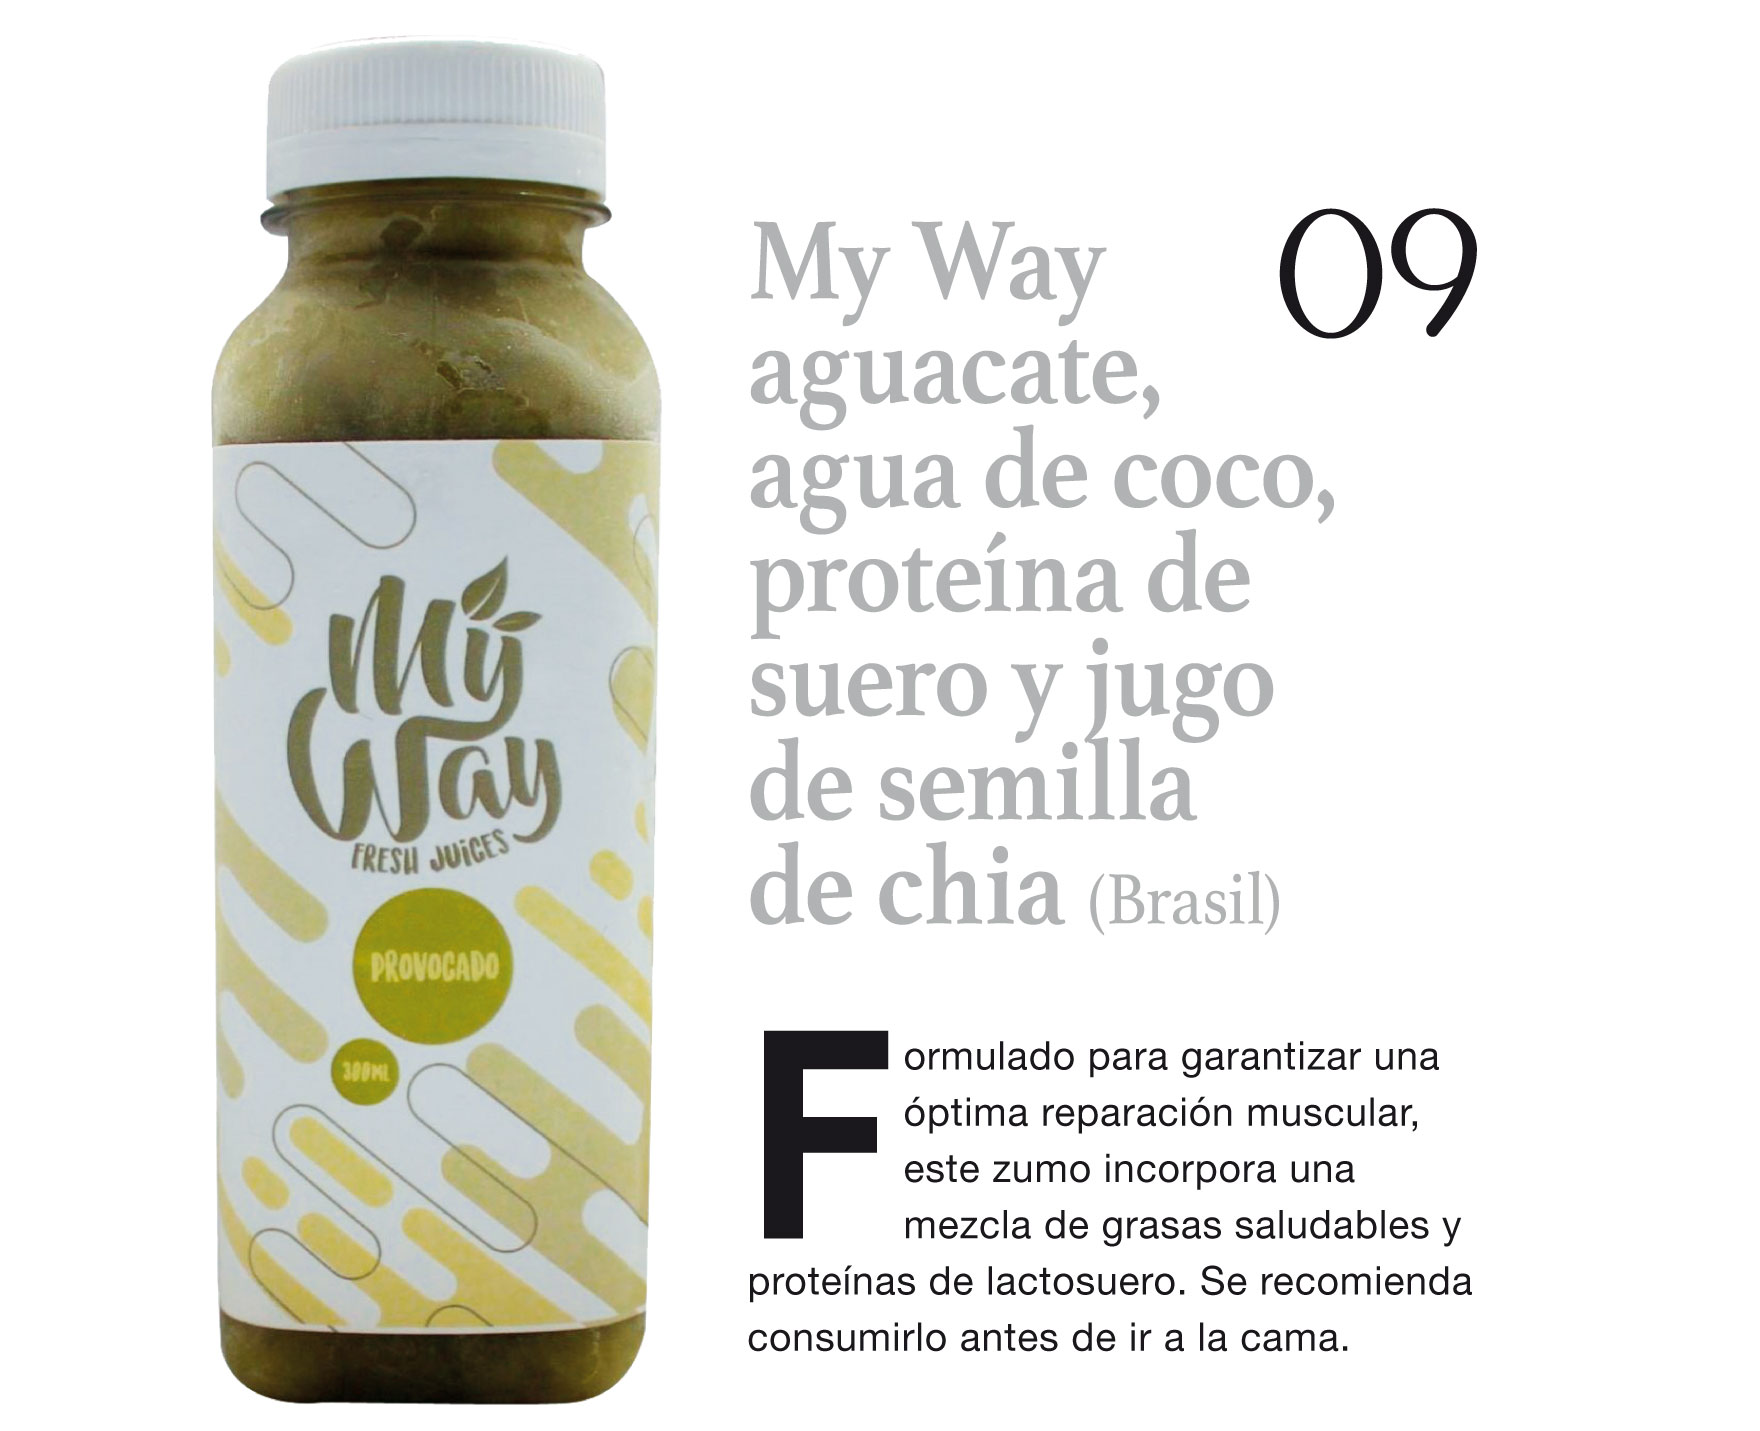 My Way aguacate, agua de coco, proteina de suero y jugo de semilla de chia (Brasil)